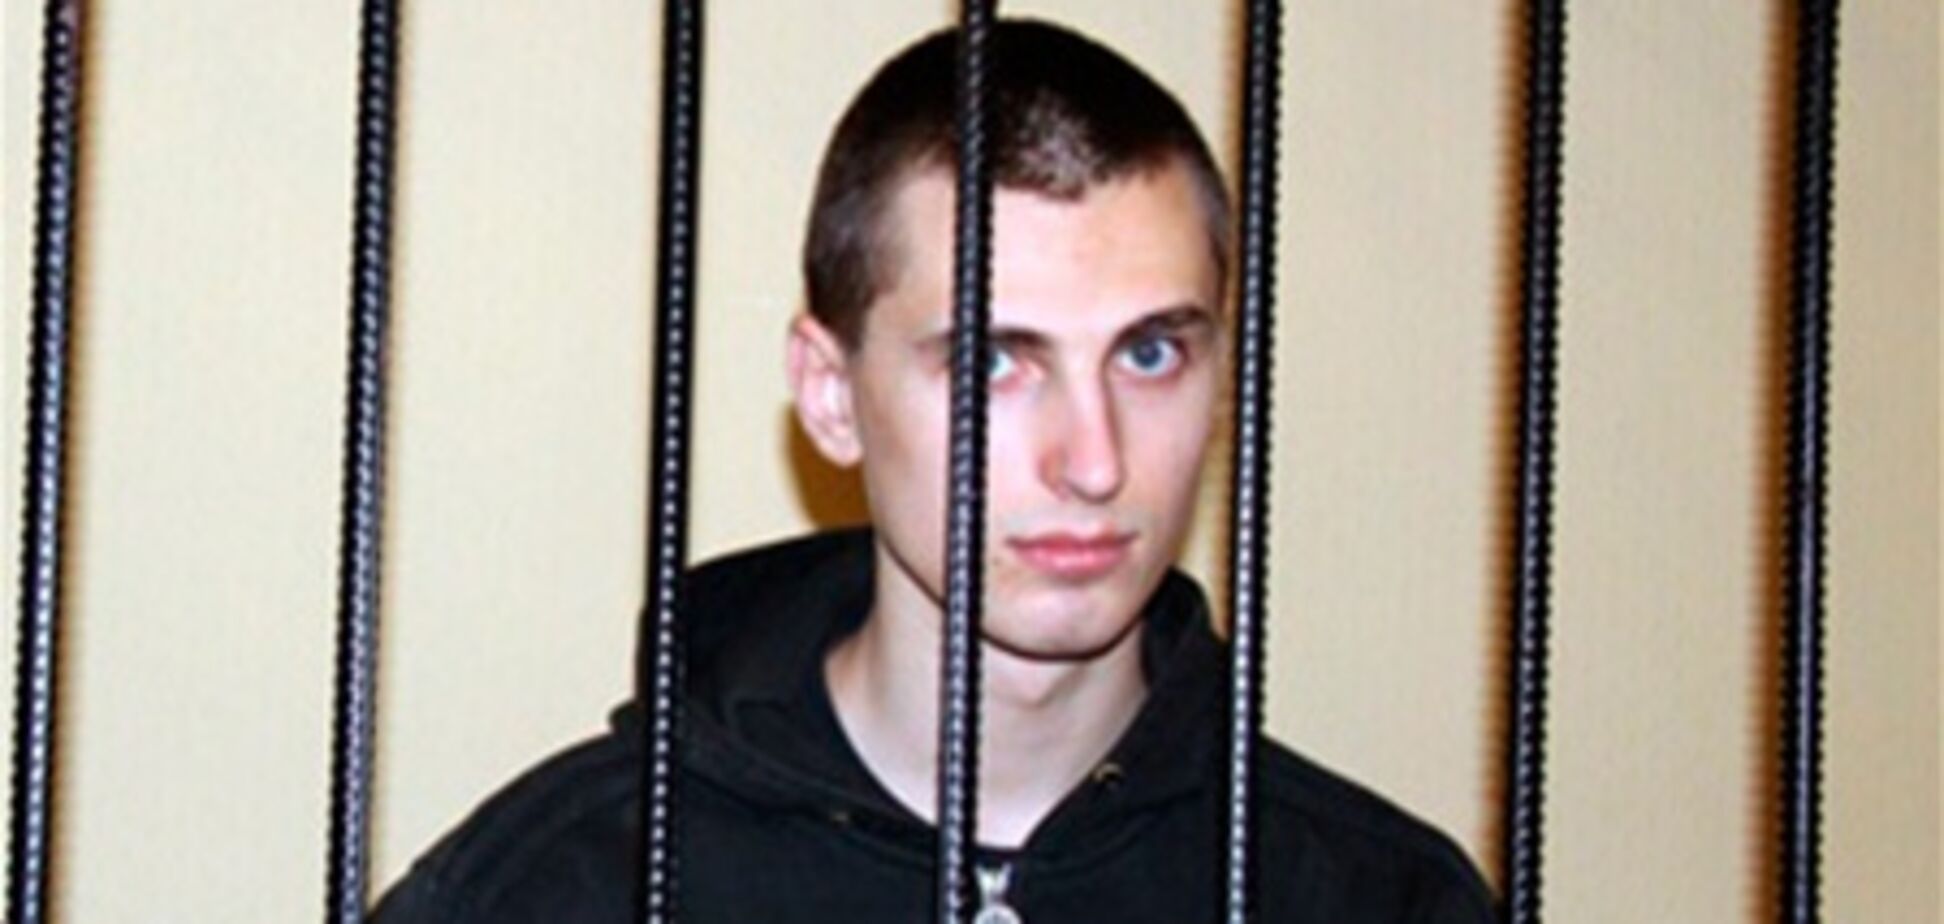 Павличенко рассказал детали убийства судьи, известные лишь тем, кто его совершил